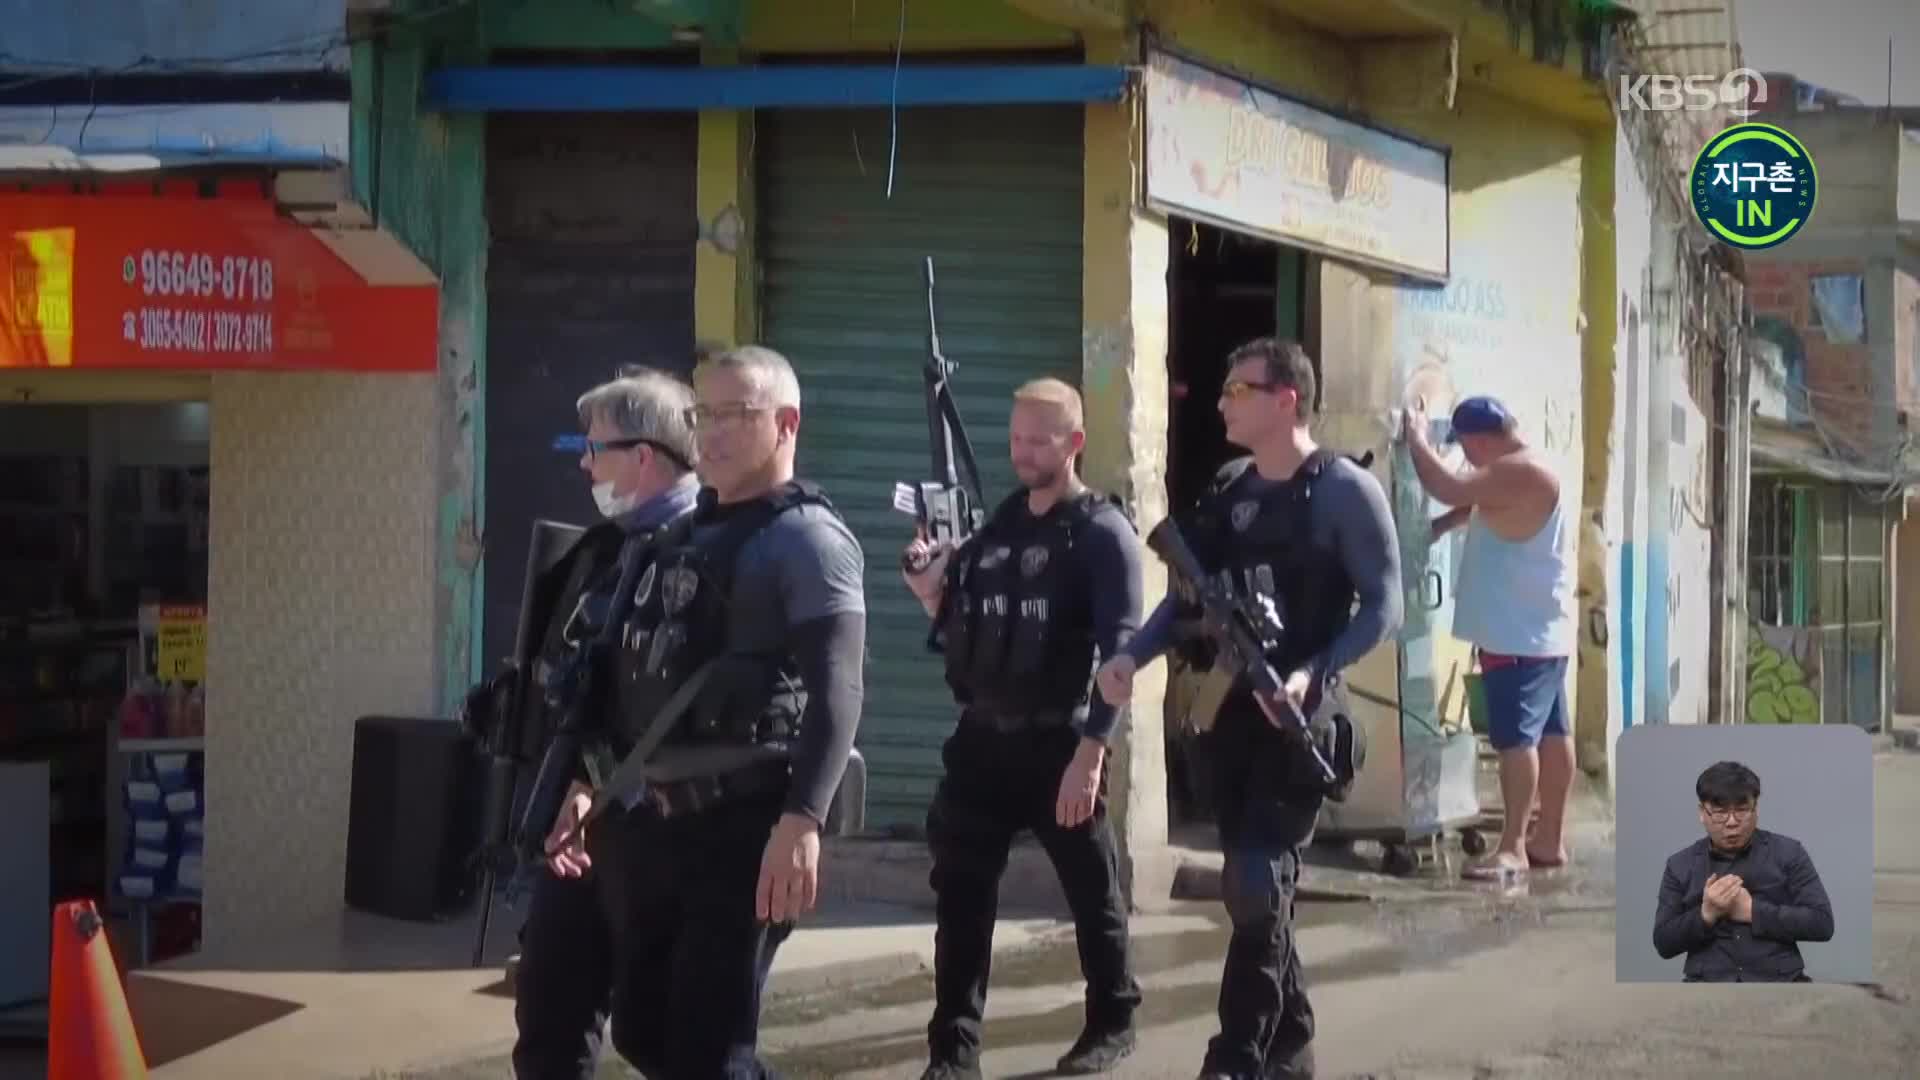 [지구촌 IN] 브라질 경찰, 갱단 잡으려다 민간인까지?